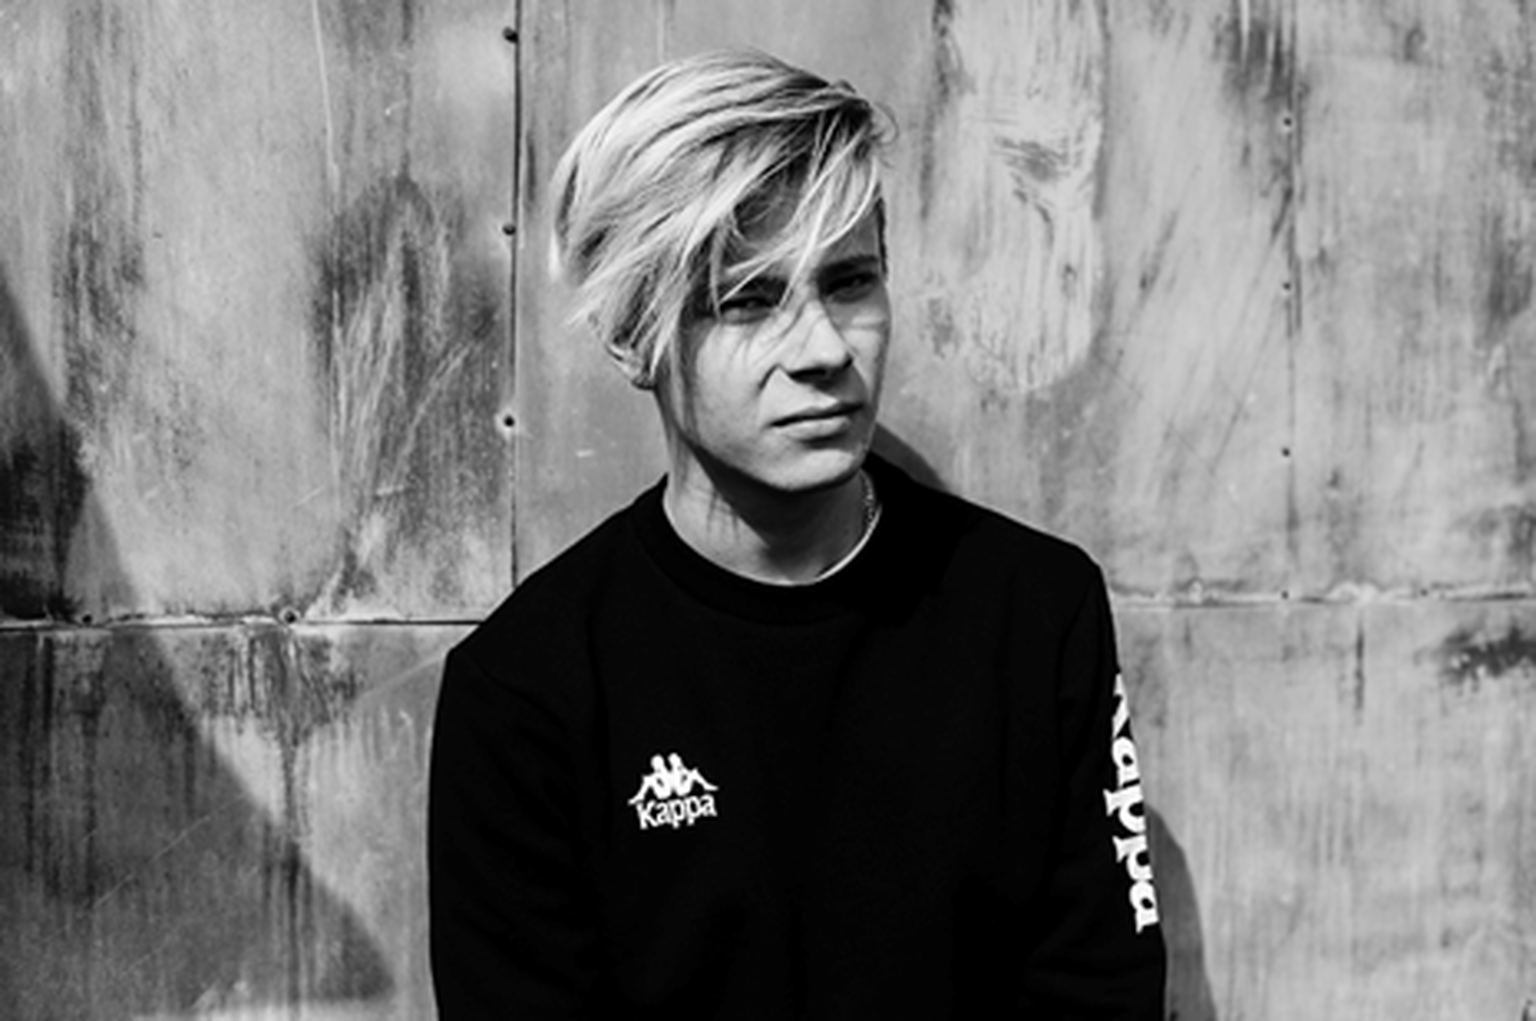 Soome päritolu 18-aastane DJ-produtsent Alex Mattson